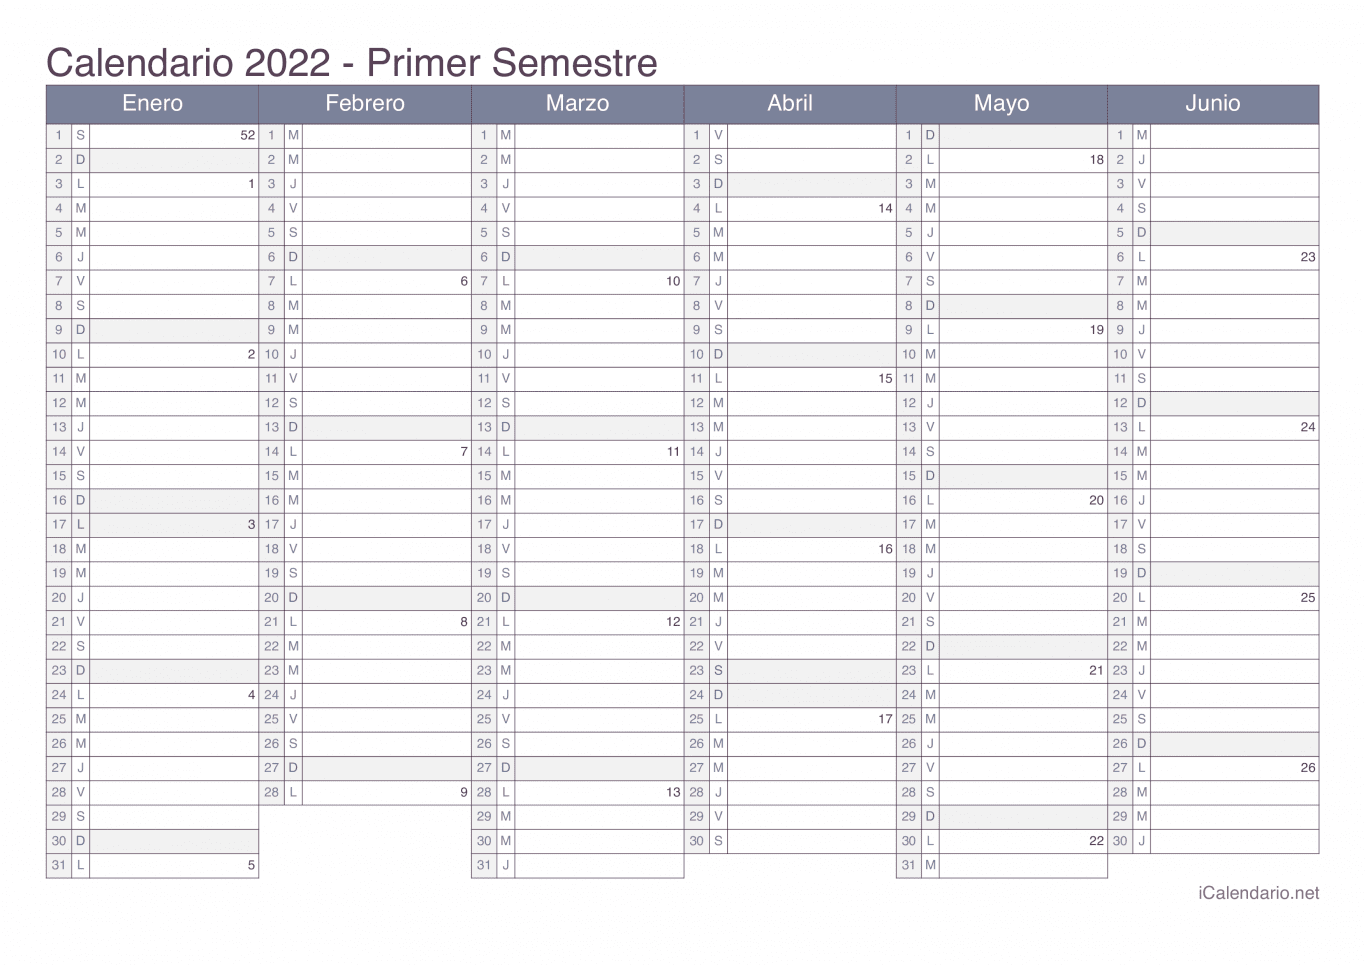 Calendario por semestre com números da semana 2022 - Office